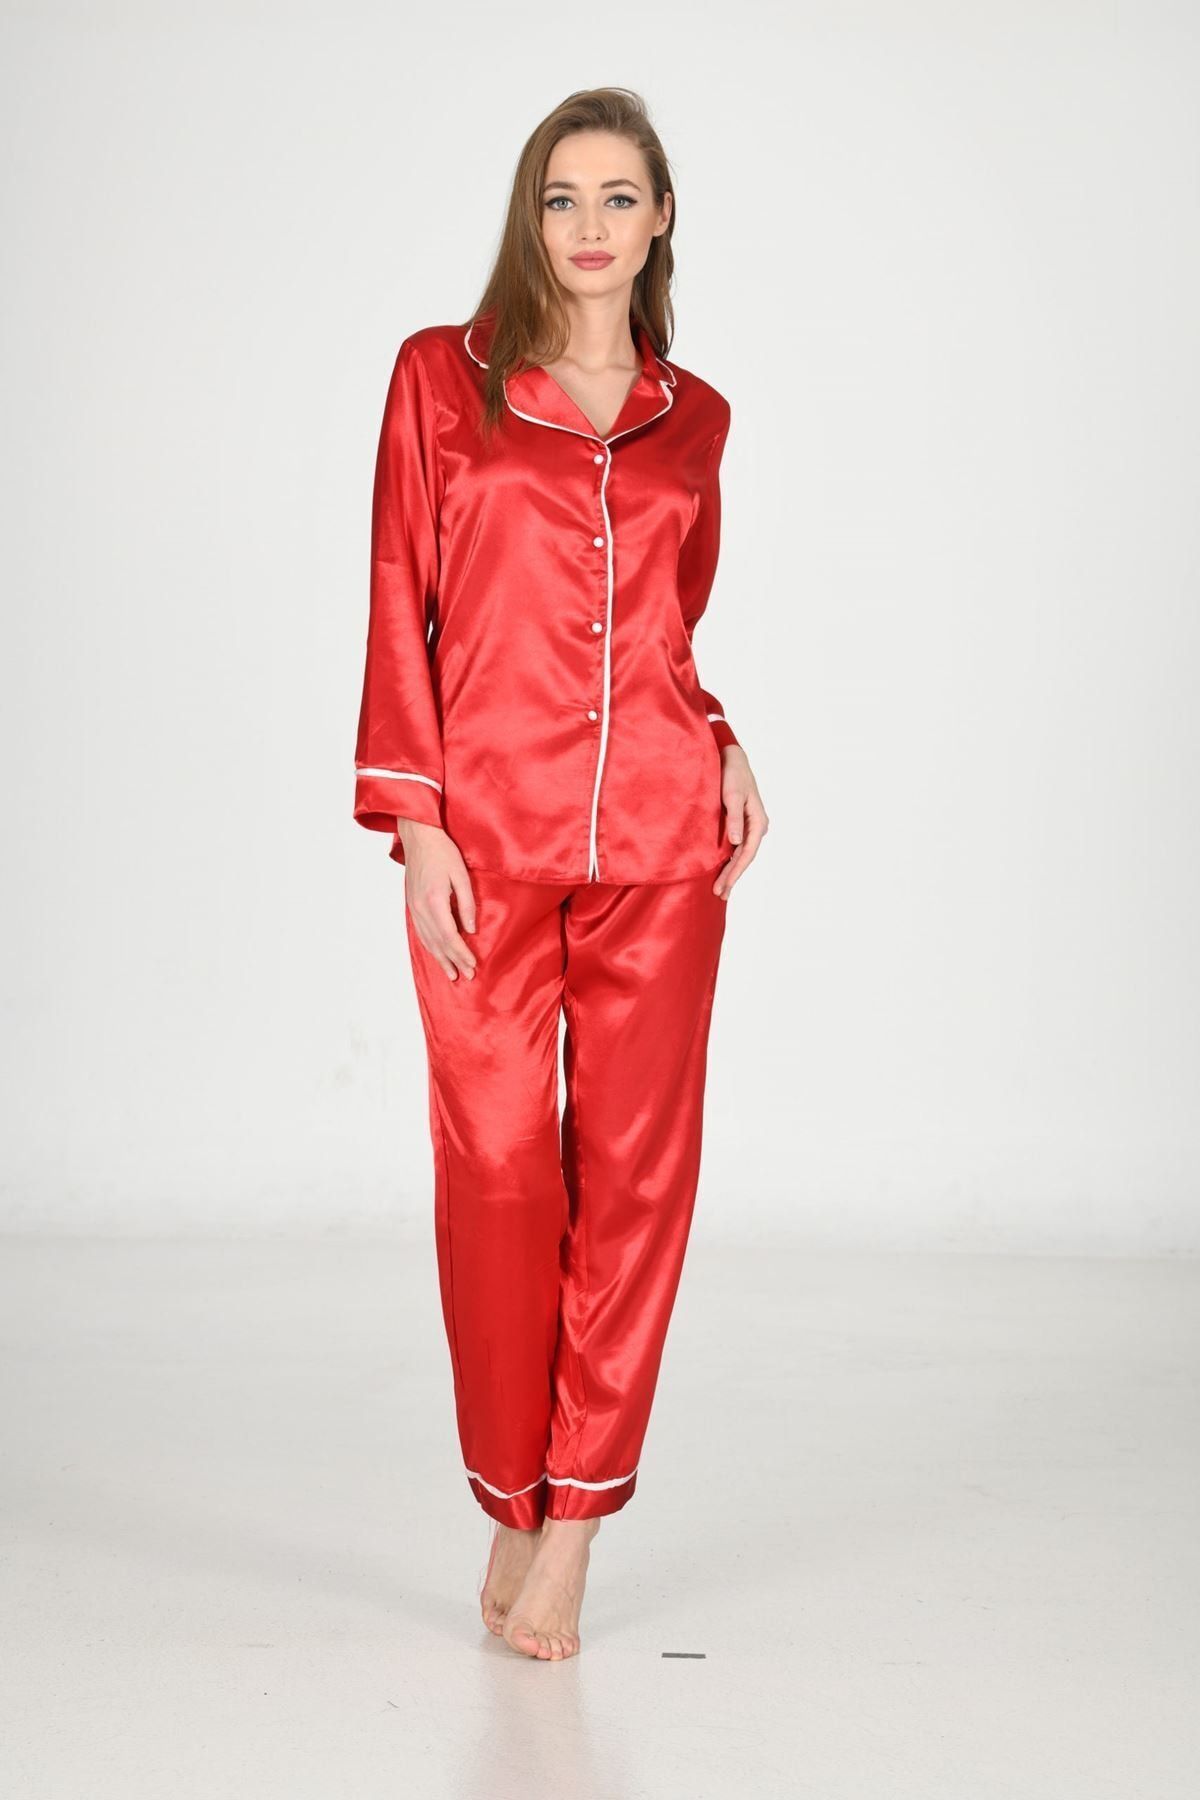 AykodenT Kadın Kırmızı Uzun Kollu Alt Üst Saten Pijama Takımı - Saten Çeyizlik Pijama Takımı